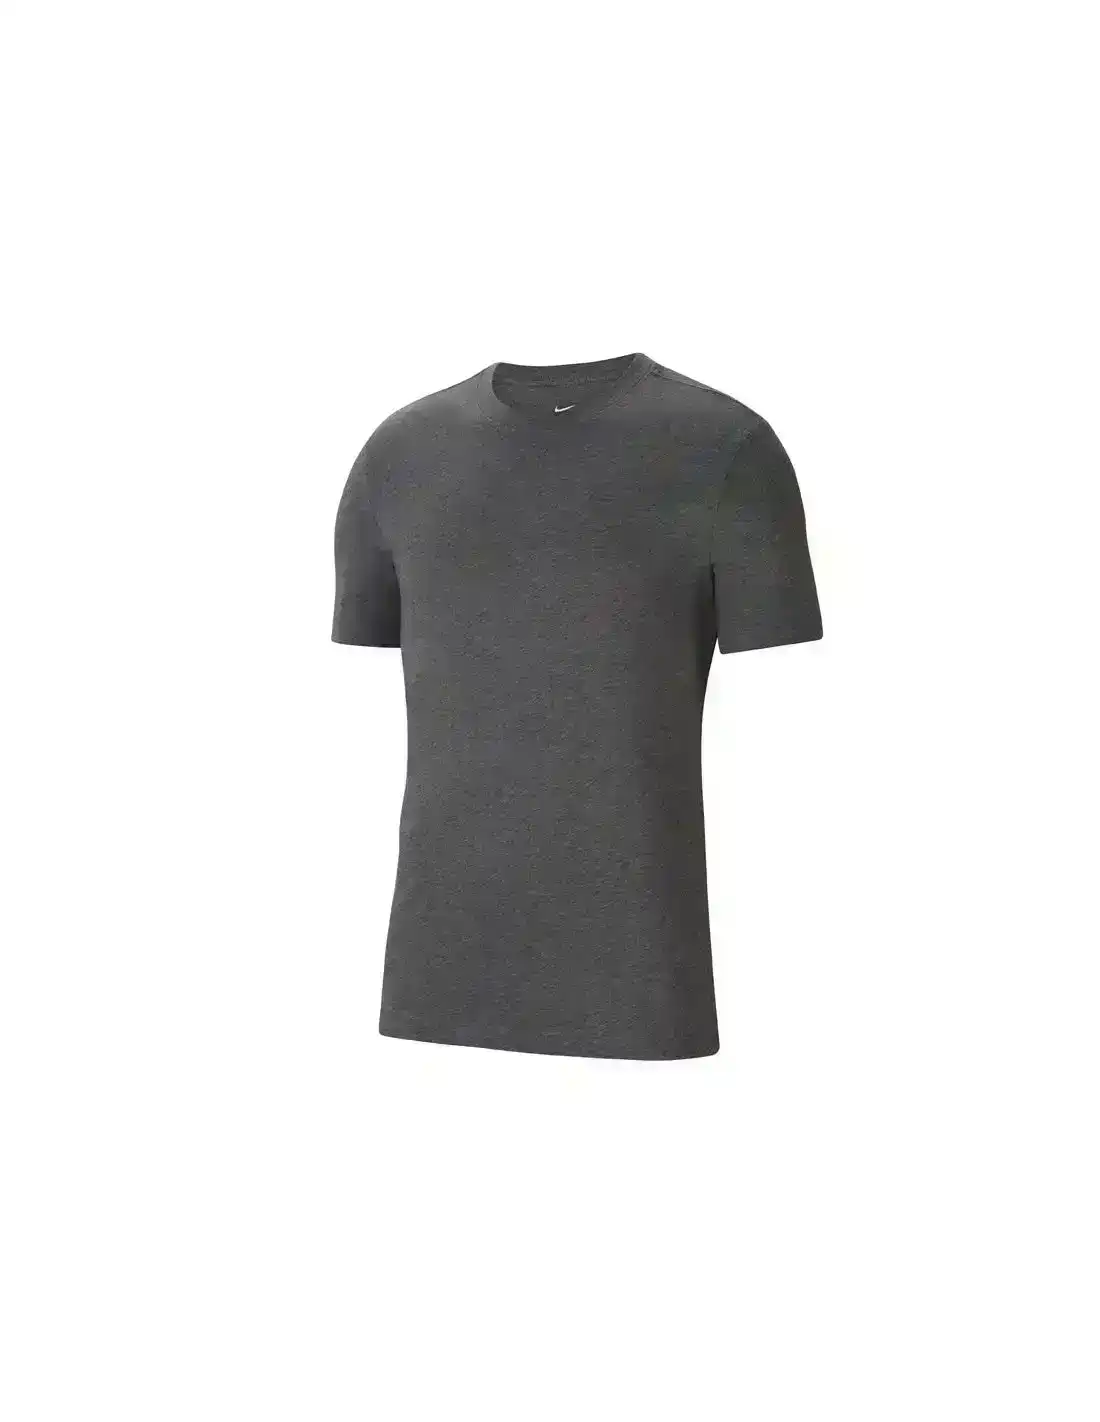 4 x Nike Park 20 T-Shirt Training Athletic Sportswear Grey